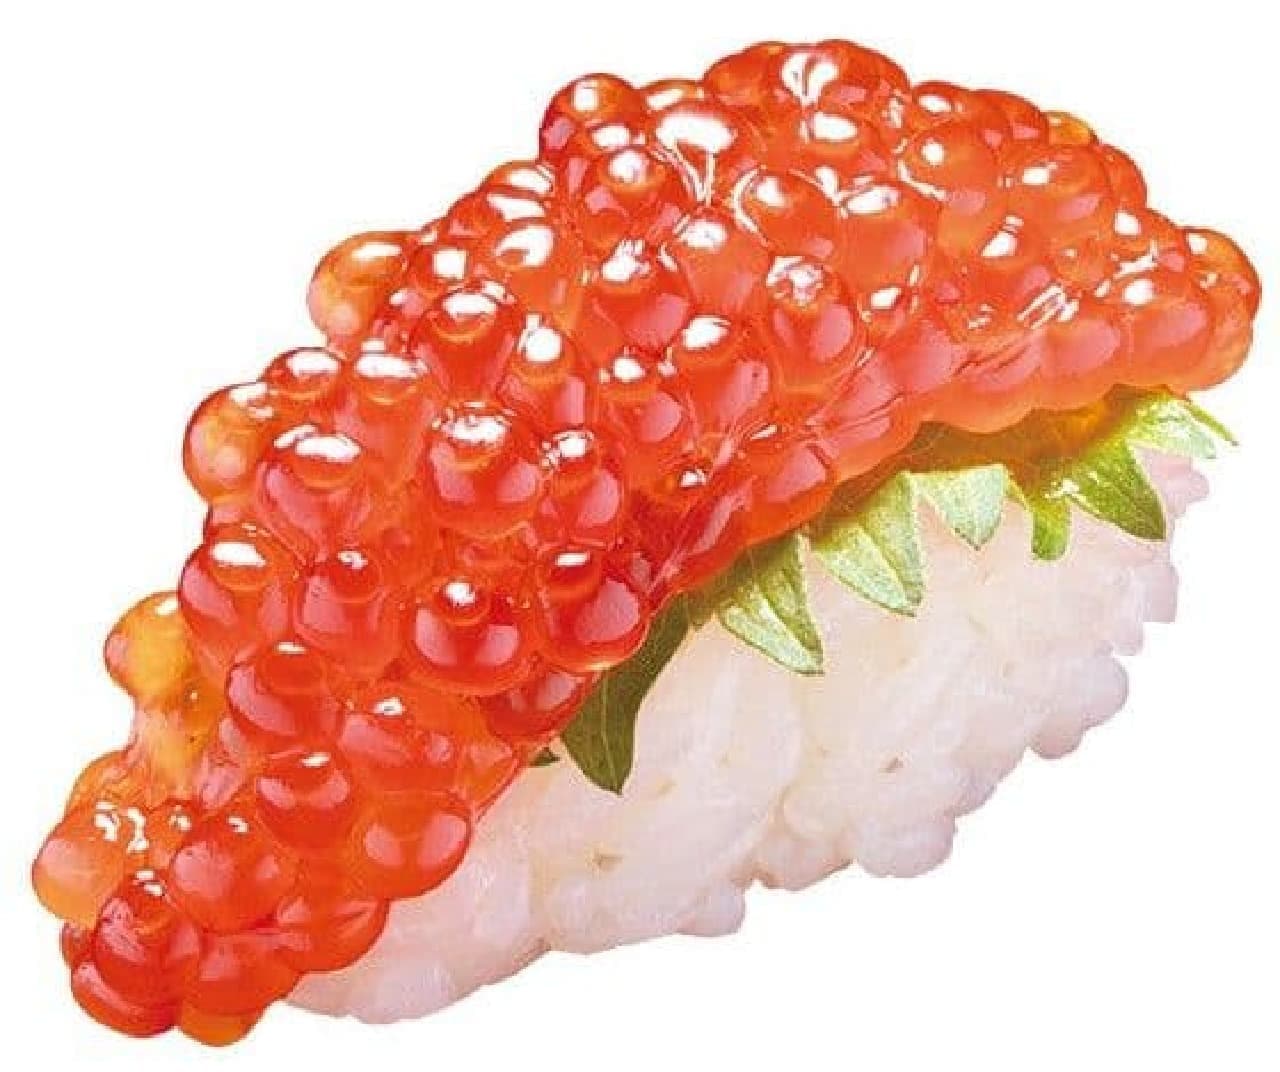 Hamazushi "Sockeye Salmon Sujiko